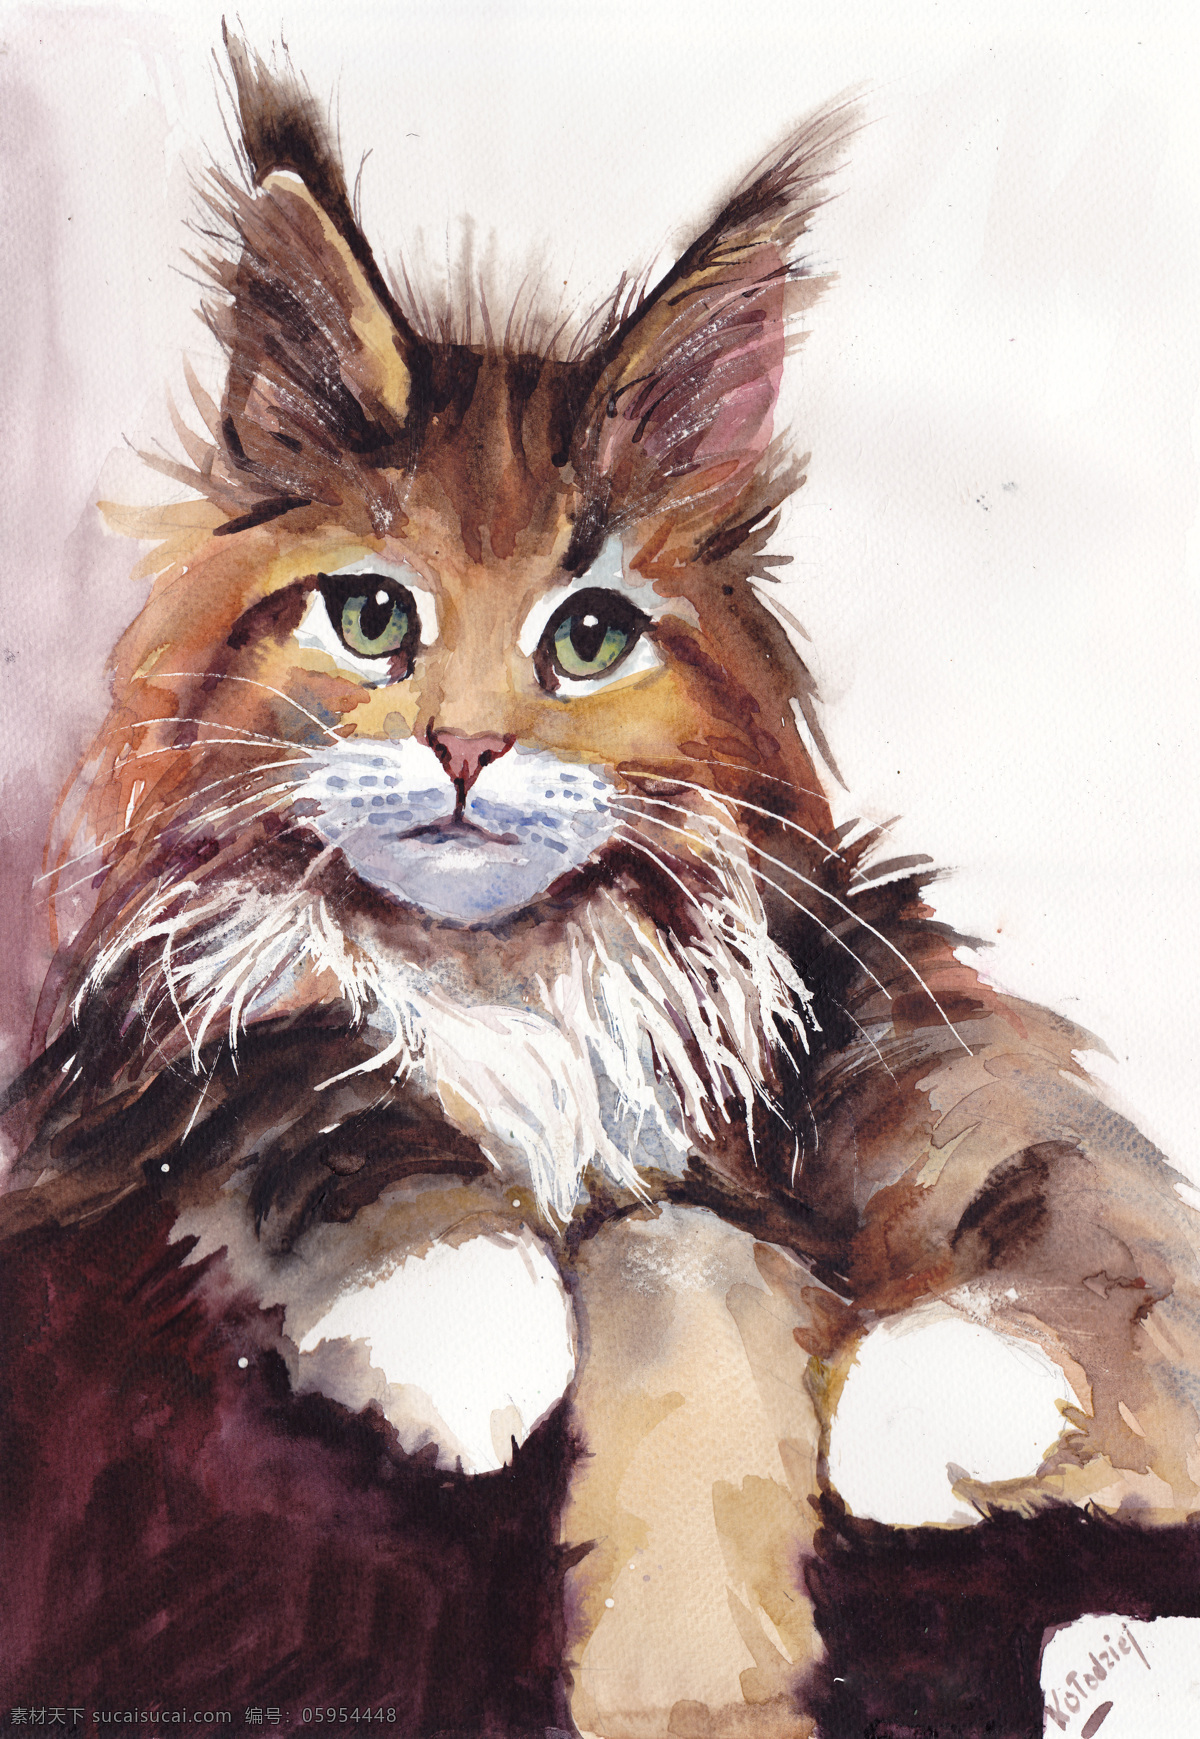 可爱 动物 小 猫咪 油画 可爱动物 猫 复古油画 油画绘画 装饰画 艺术绘画 艺术创作 世界名画 场景油画 风景油画 美景 创意 水彩颜料 文化艺术 绘画书法